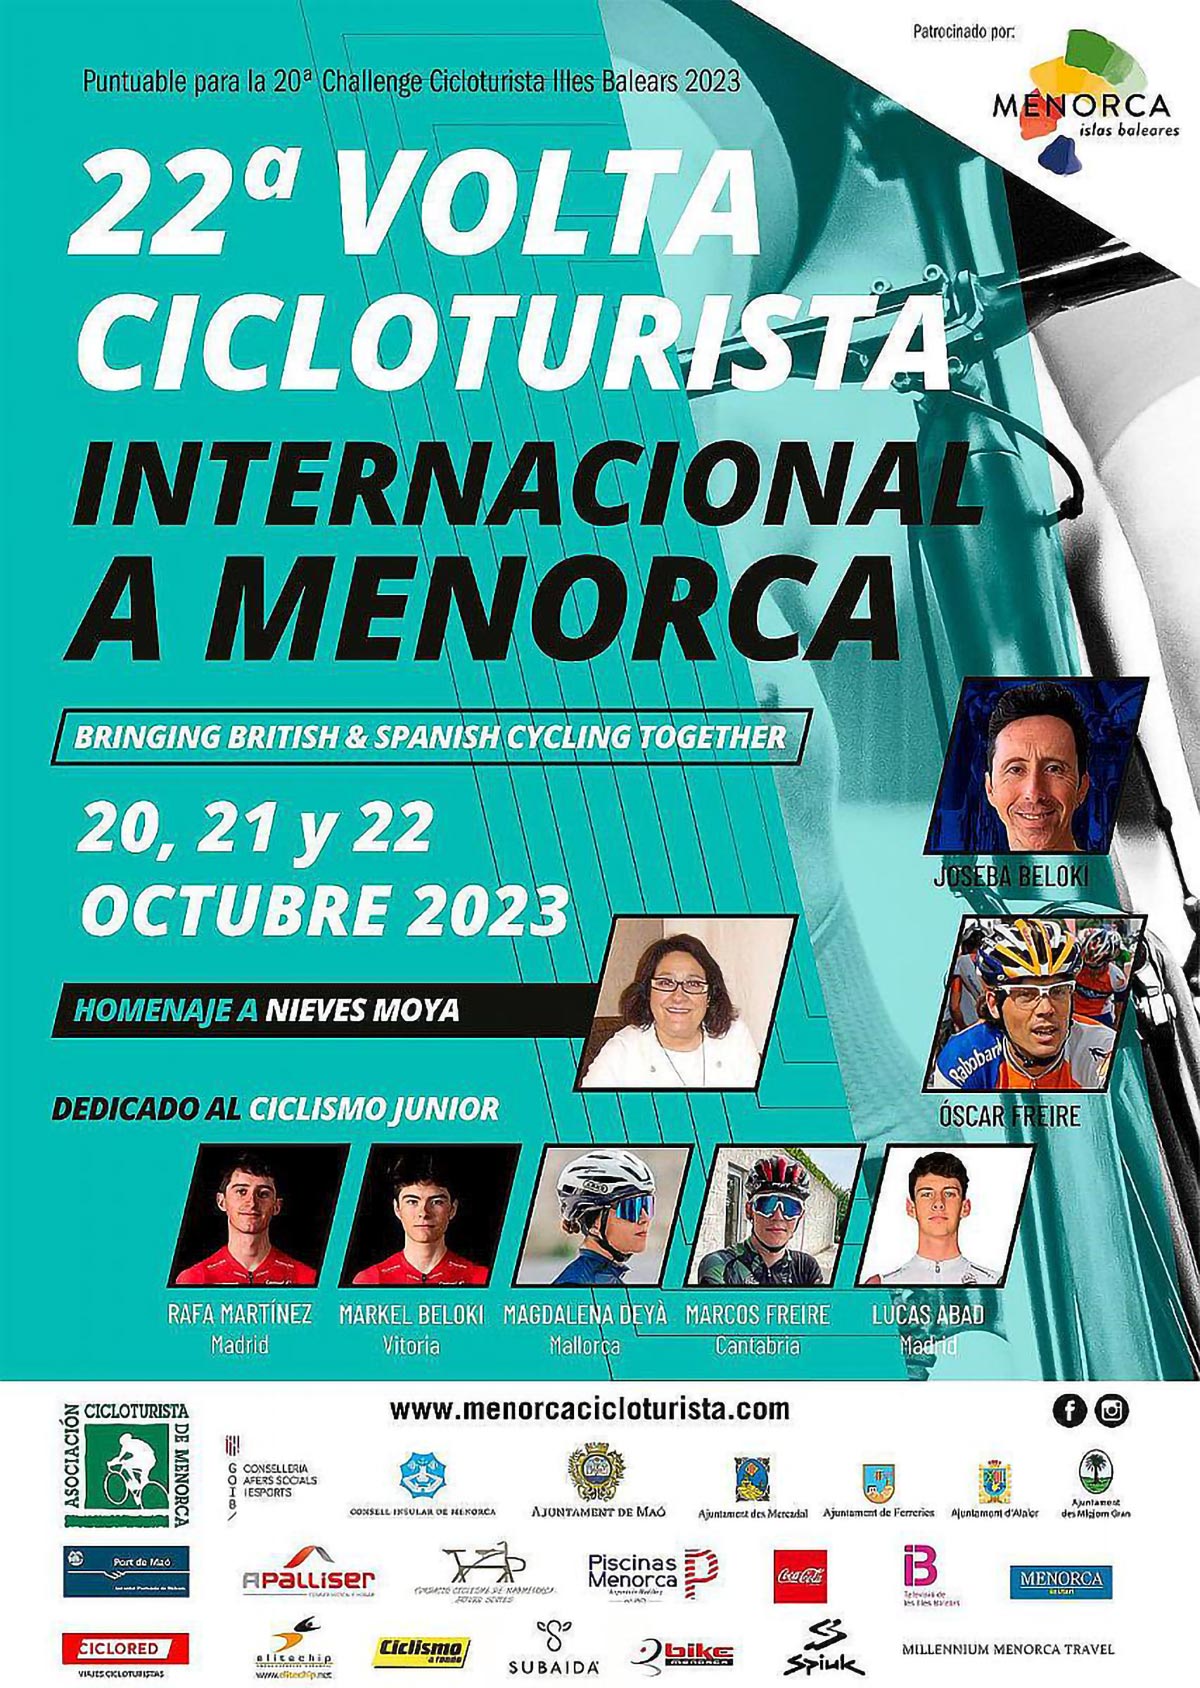 Todo a punto para la Volta Cicloturista Internacional a Menorca 2023, una de las más esperadas del año